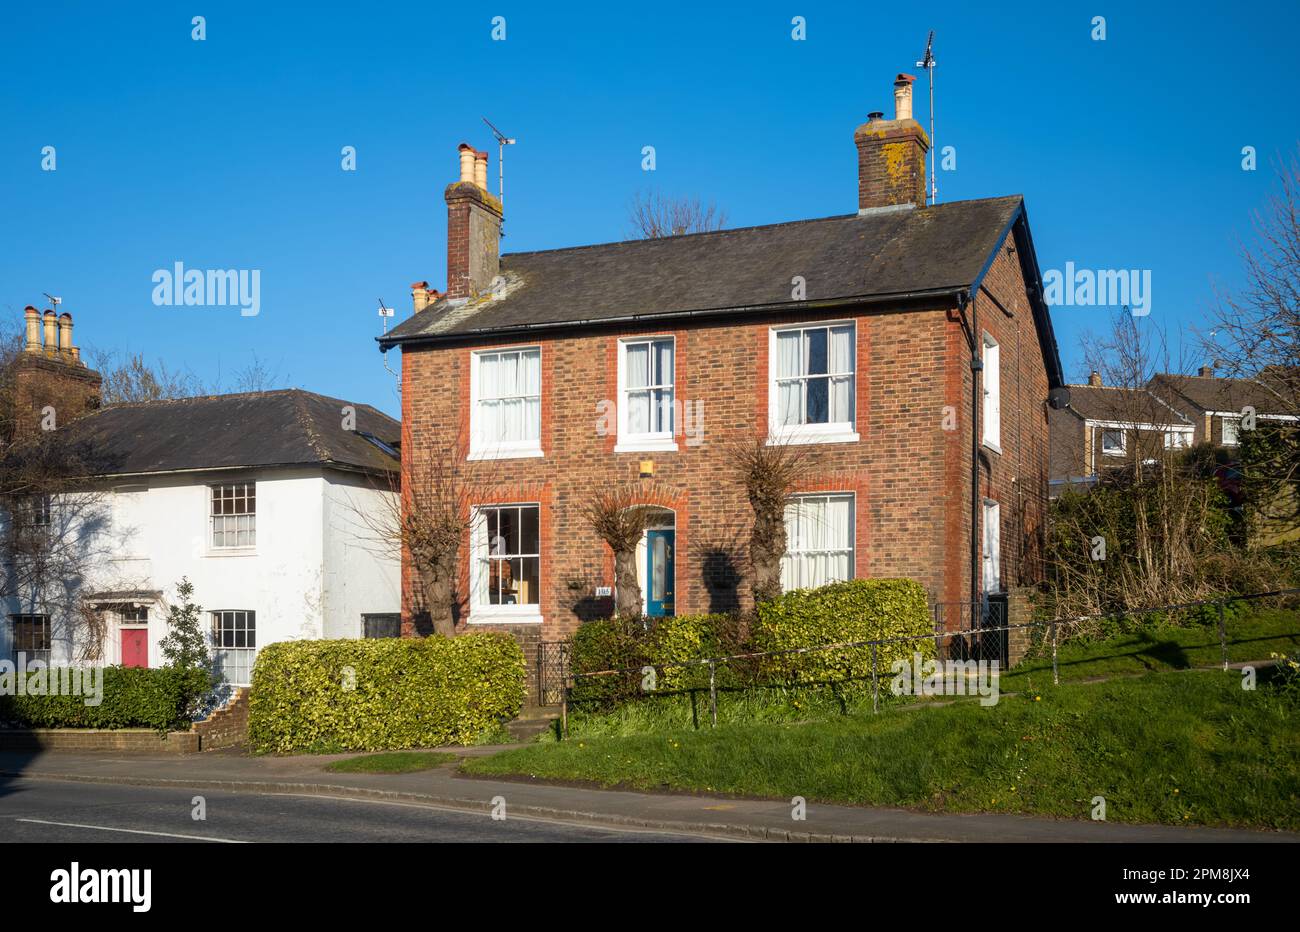 Ein viktorianisches Haus mit doppelter Fassade aus dem Jahr 1870 im Dorf Billingshurst, West Sussex, Großbritannien. Stockfoto